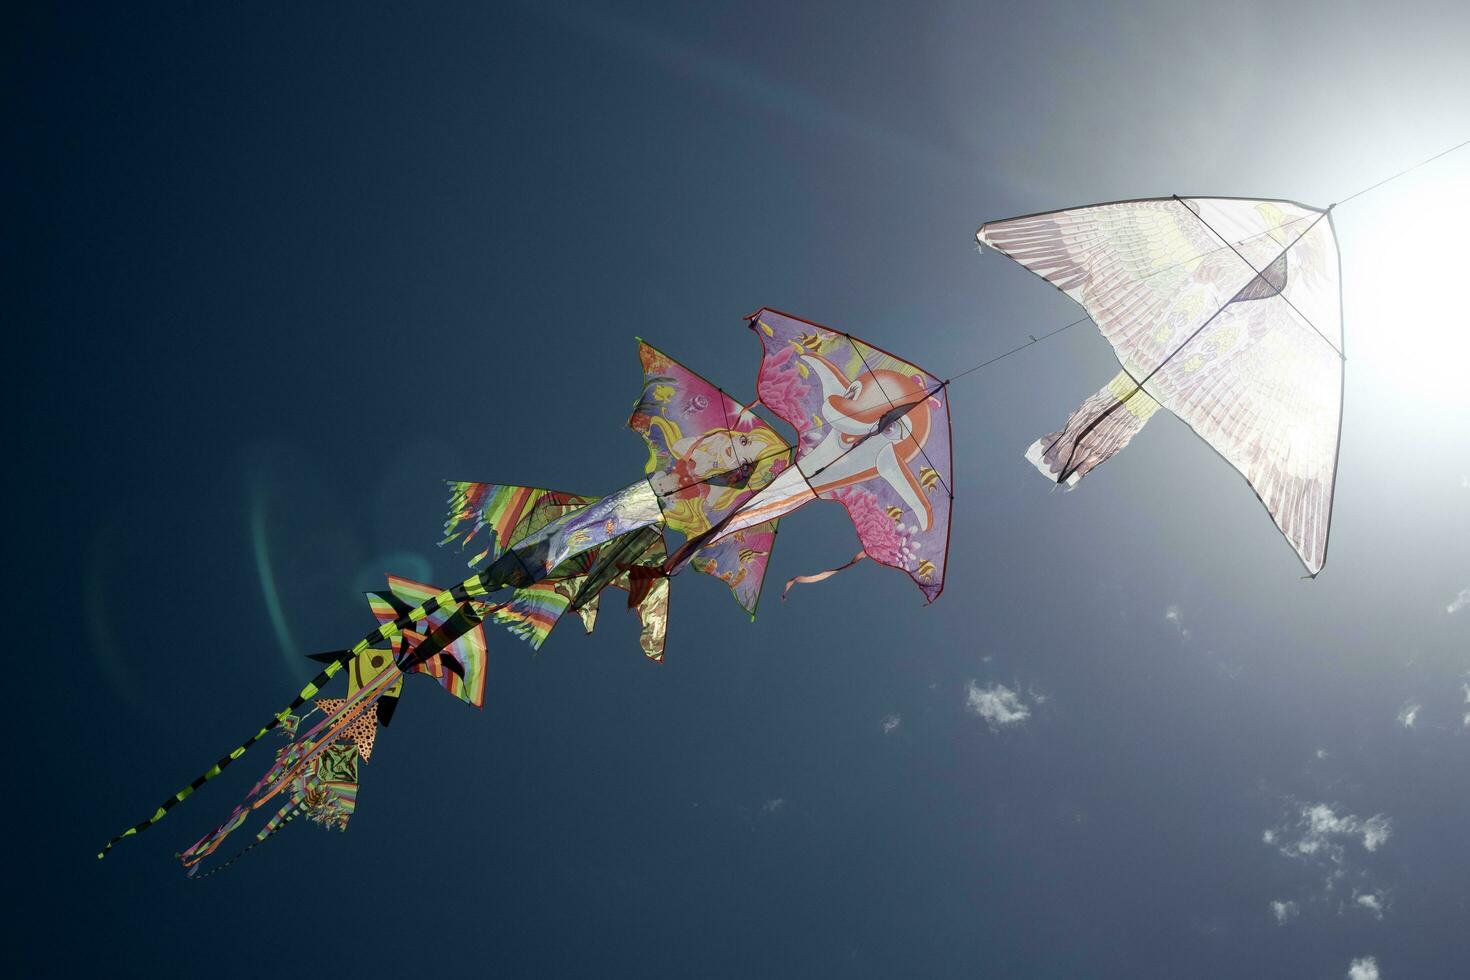 séries de coloré cerfs-volants en volant dans le bleu ciel photo